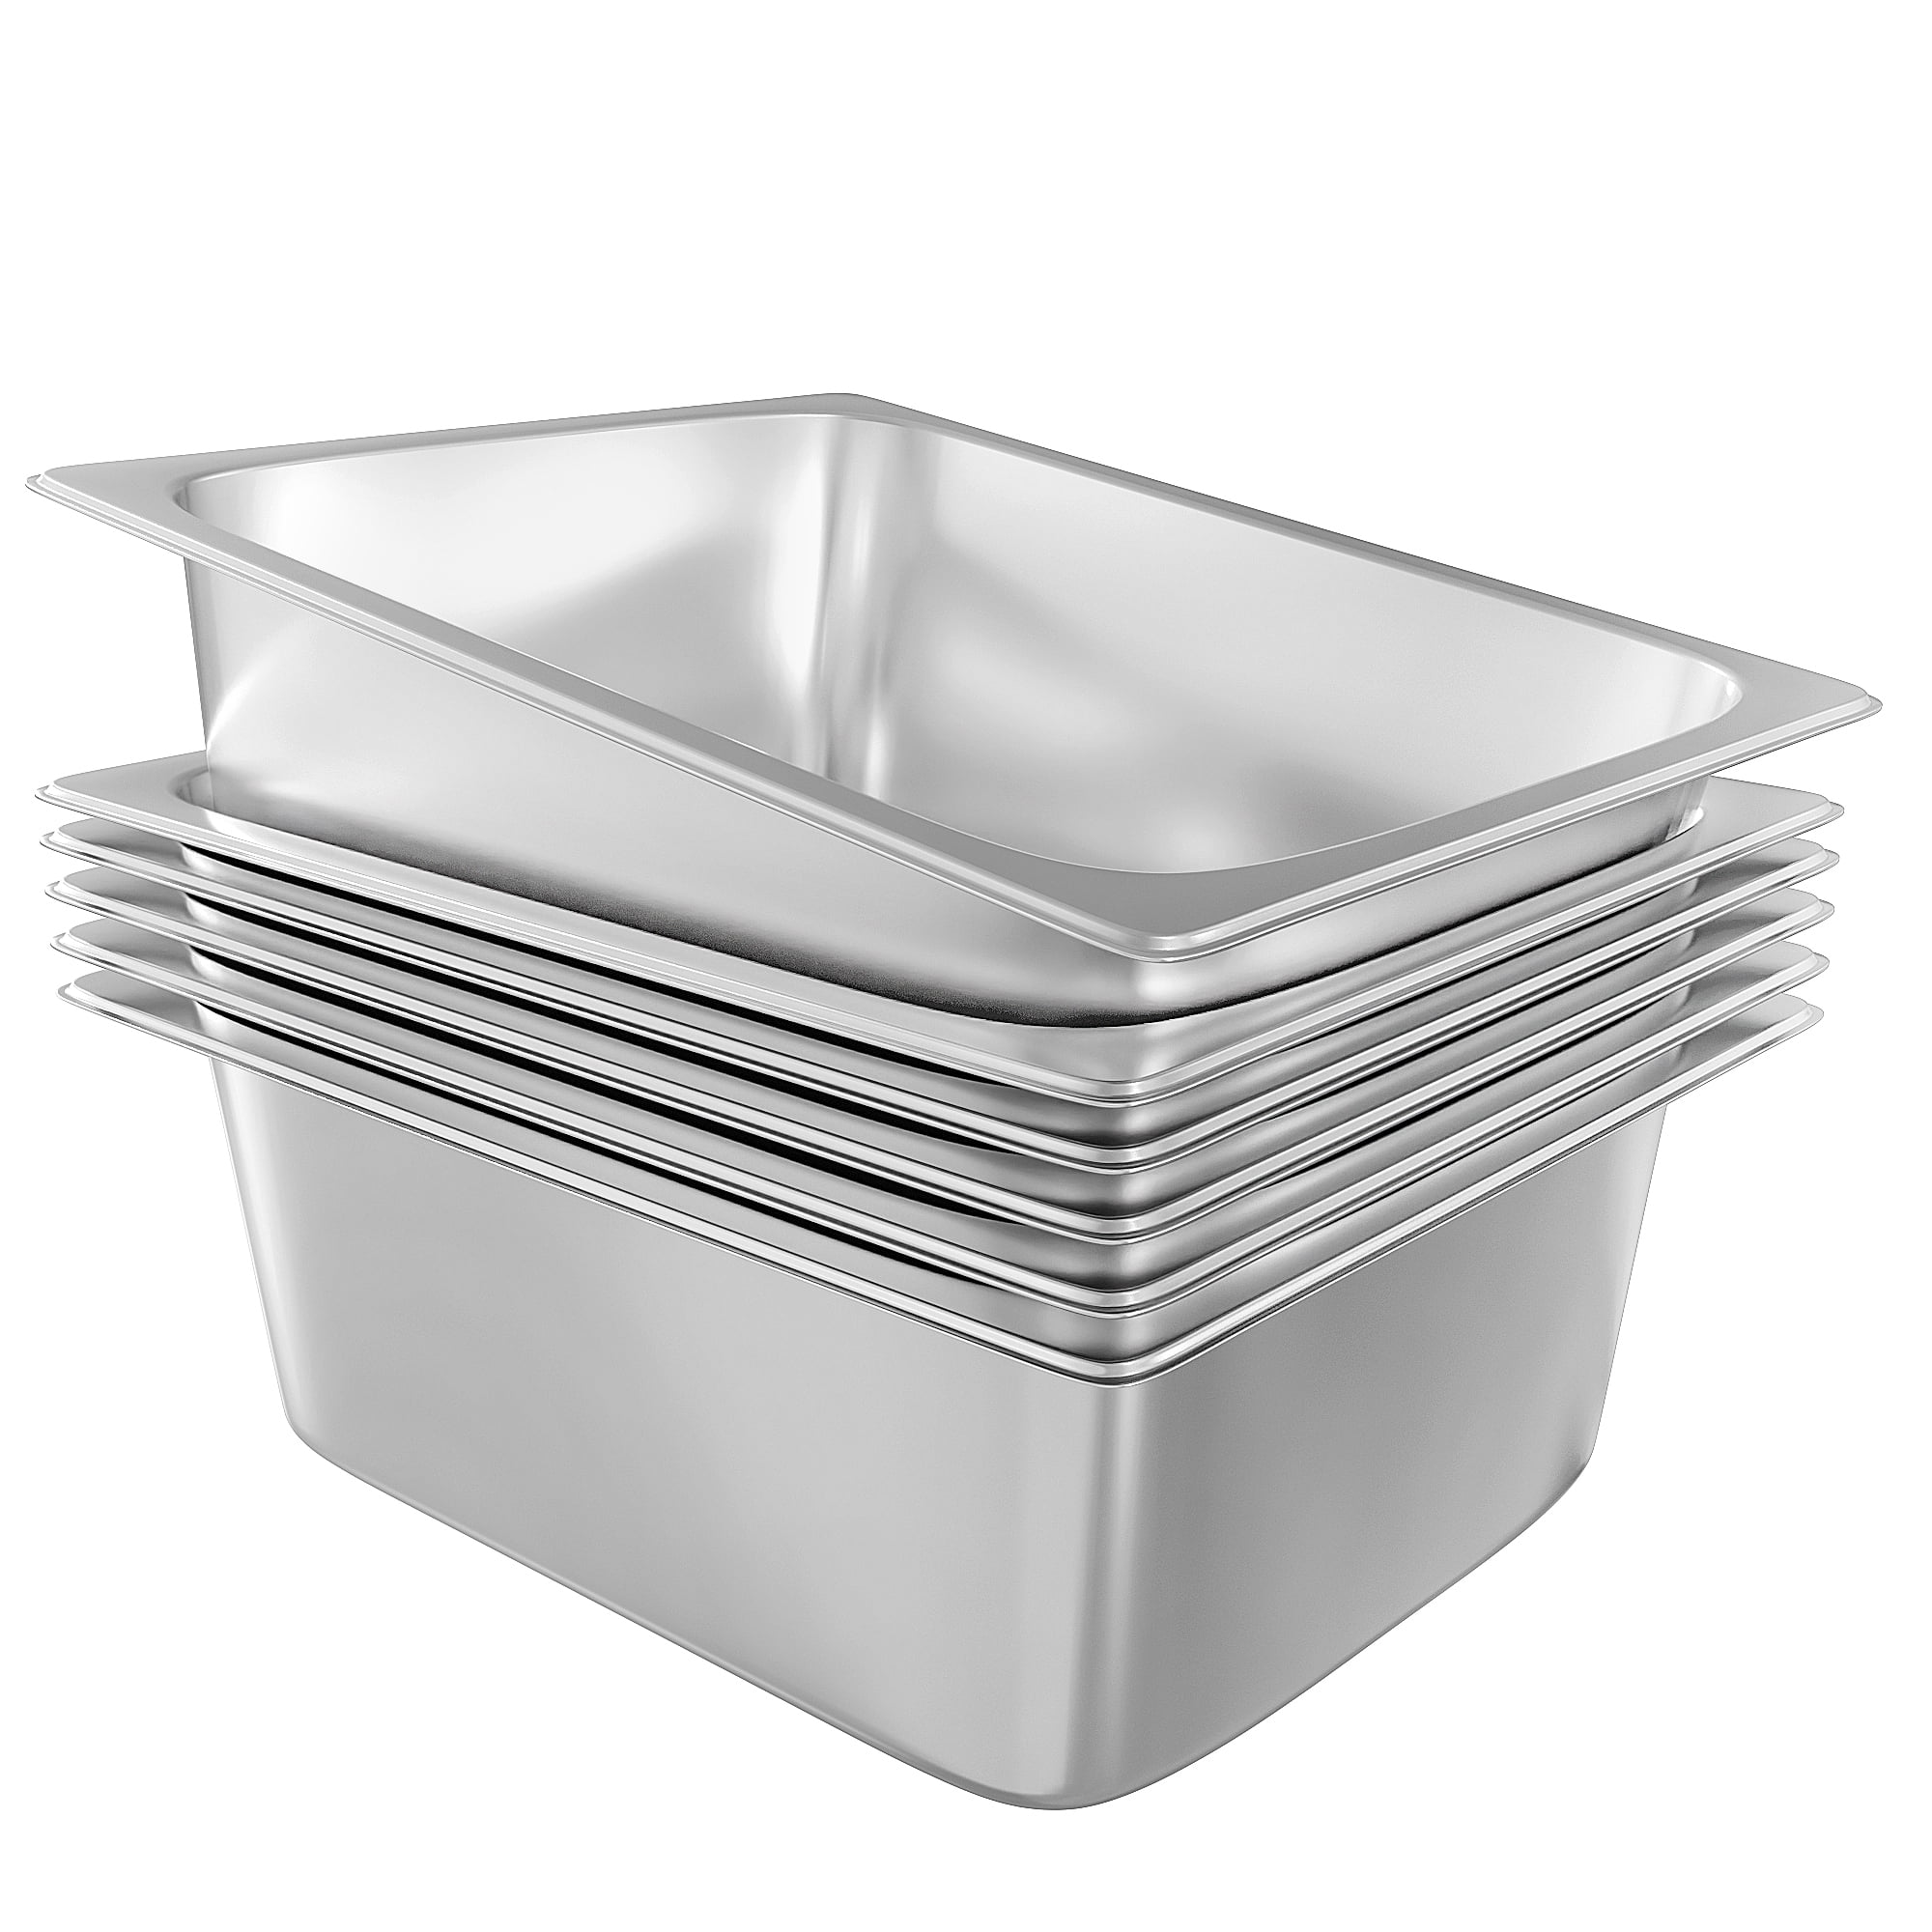 20 Pack - Disposable 9”x 13” Aluminum Foil Steam Table Deep Pans